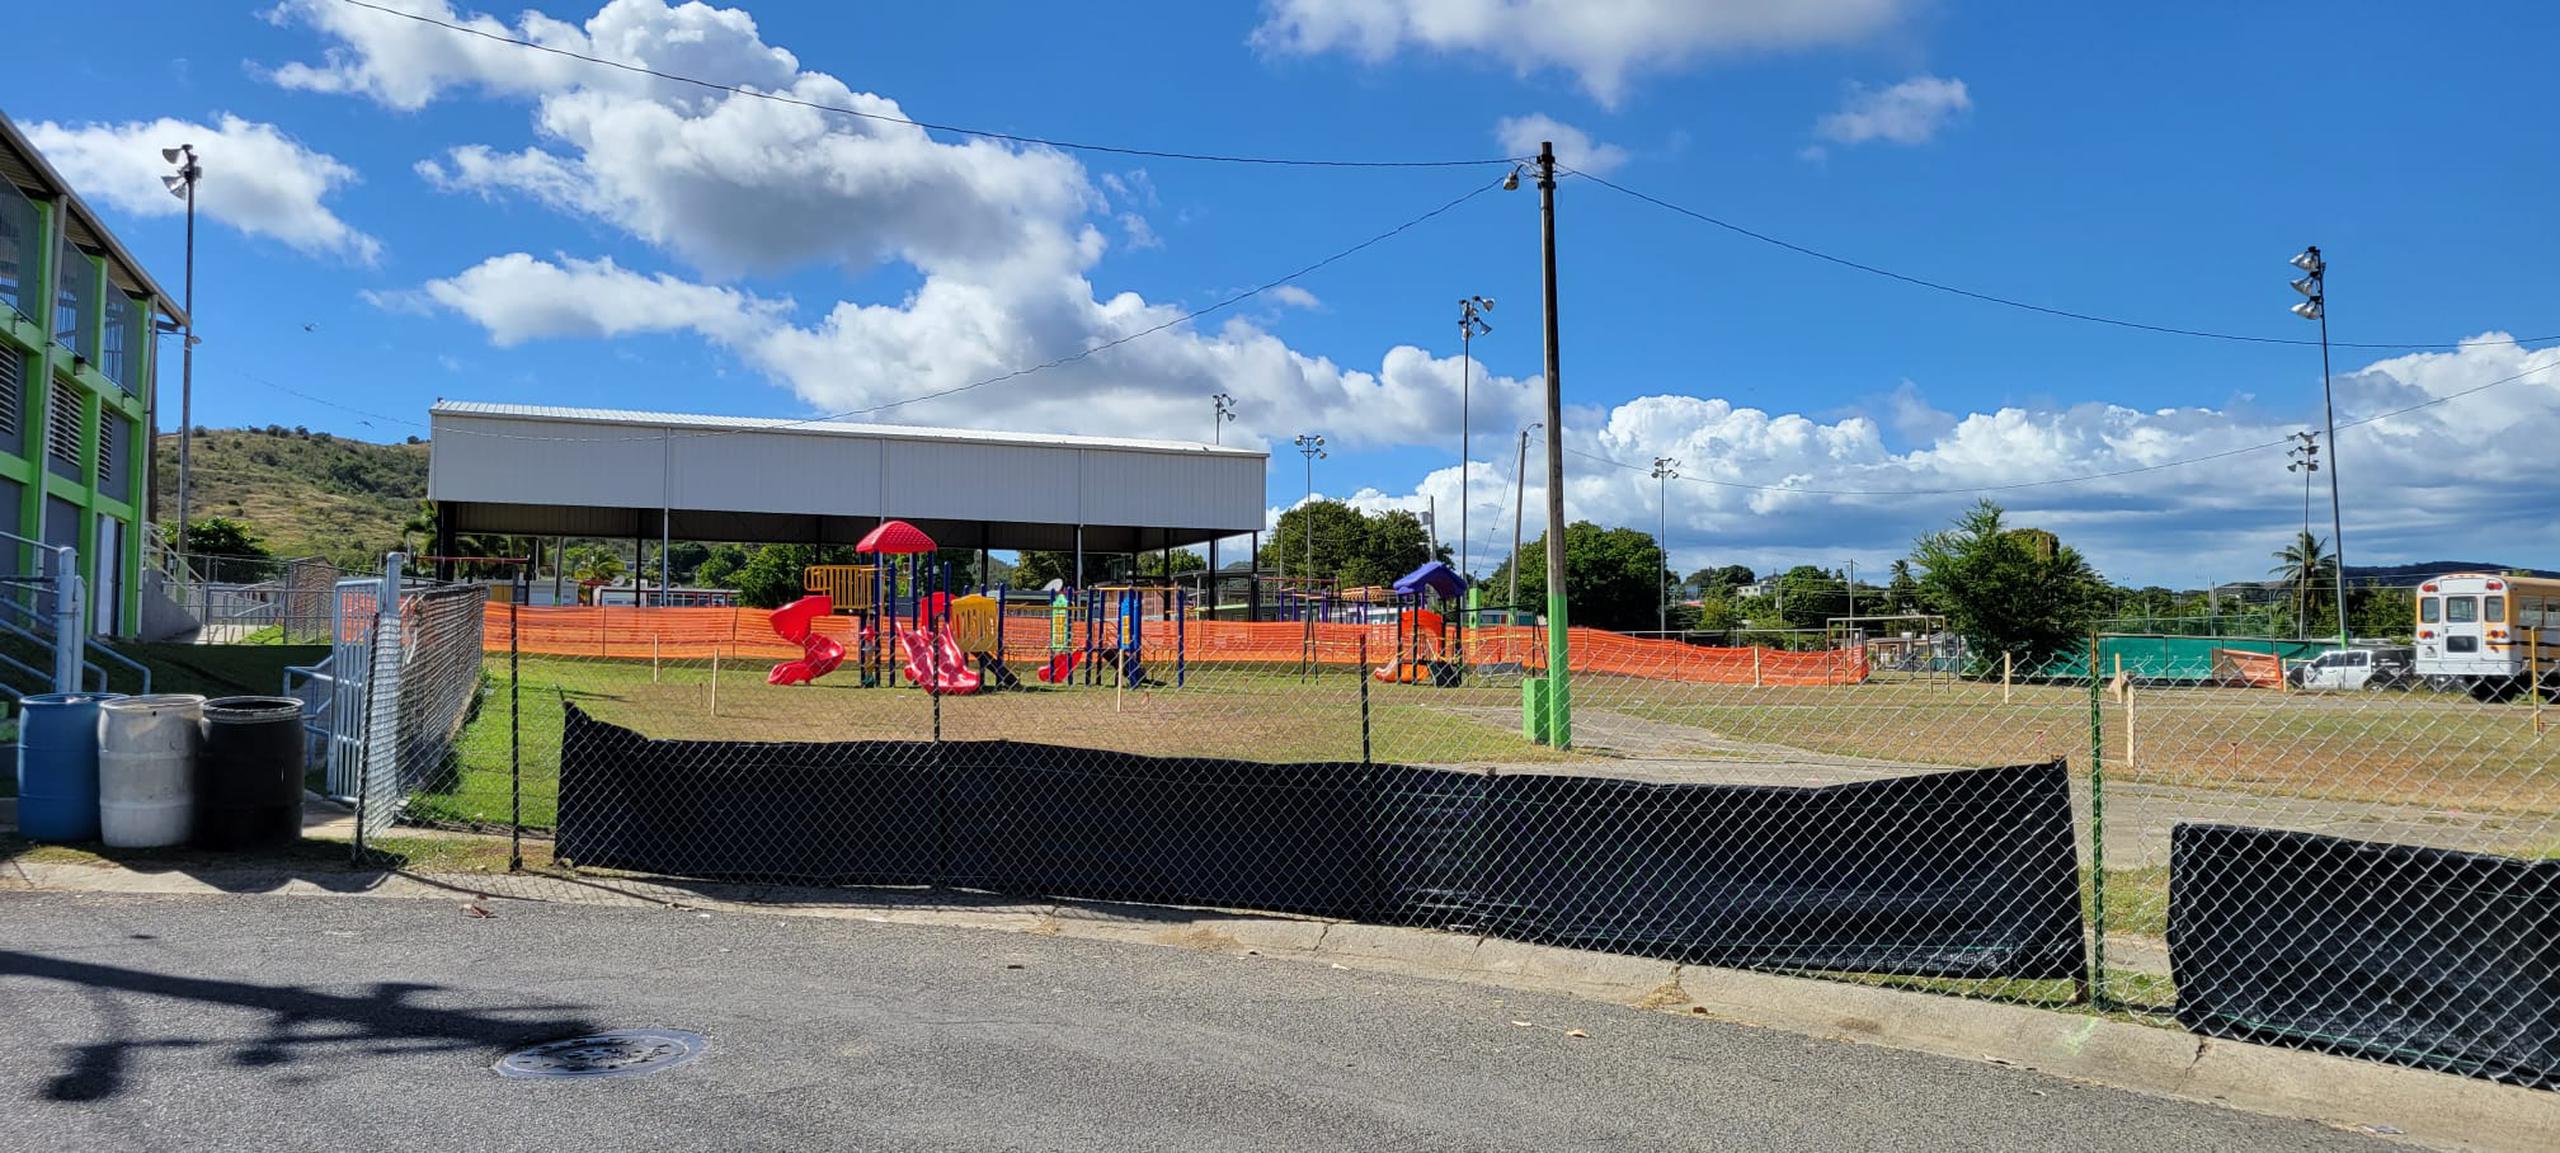 La construcción impedirá a los niños de la comunidad usar su parque recreativo.